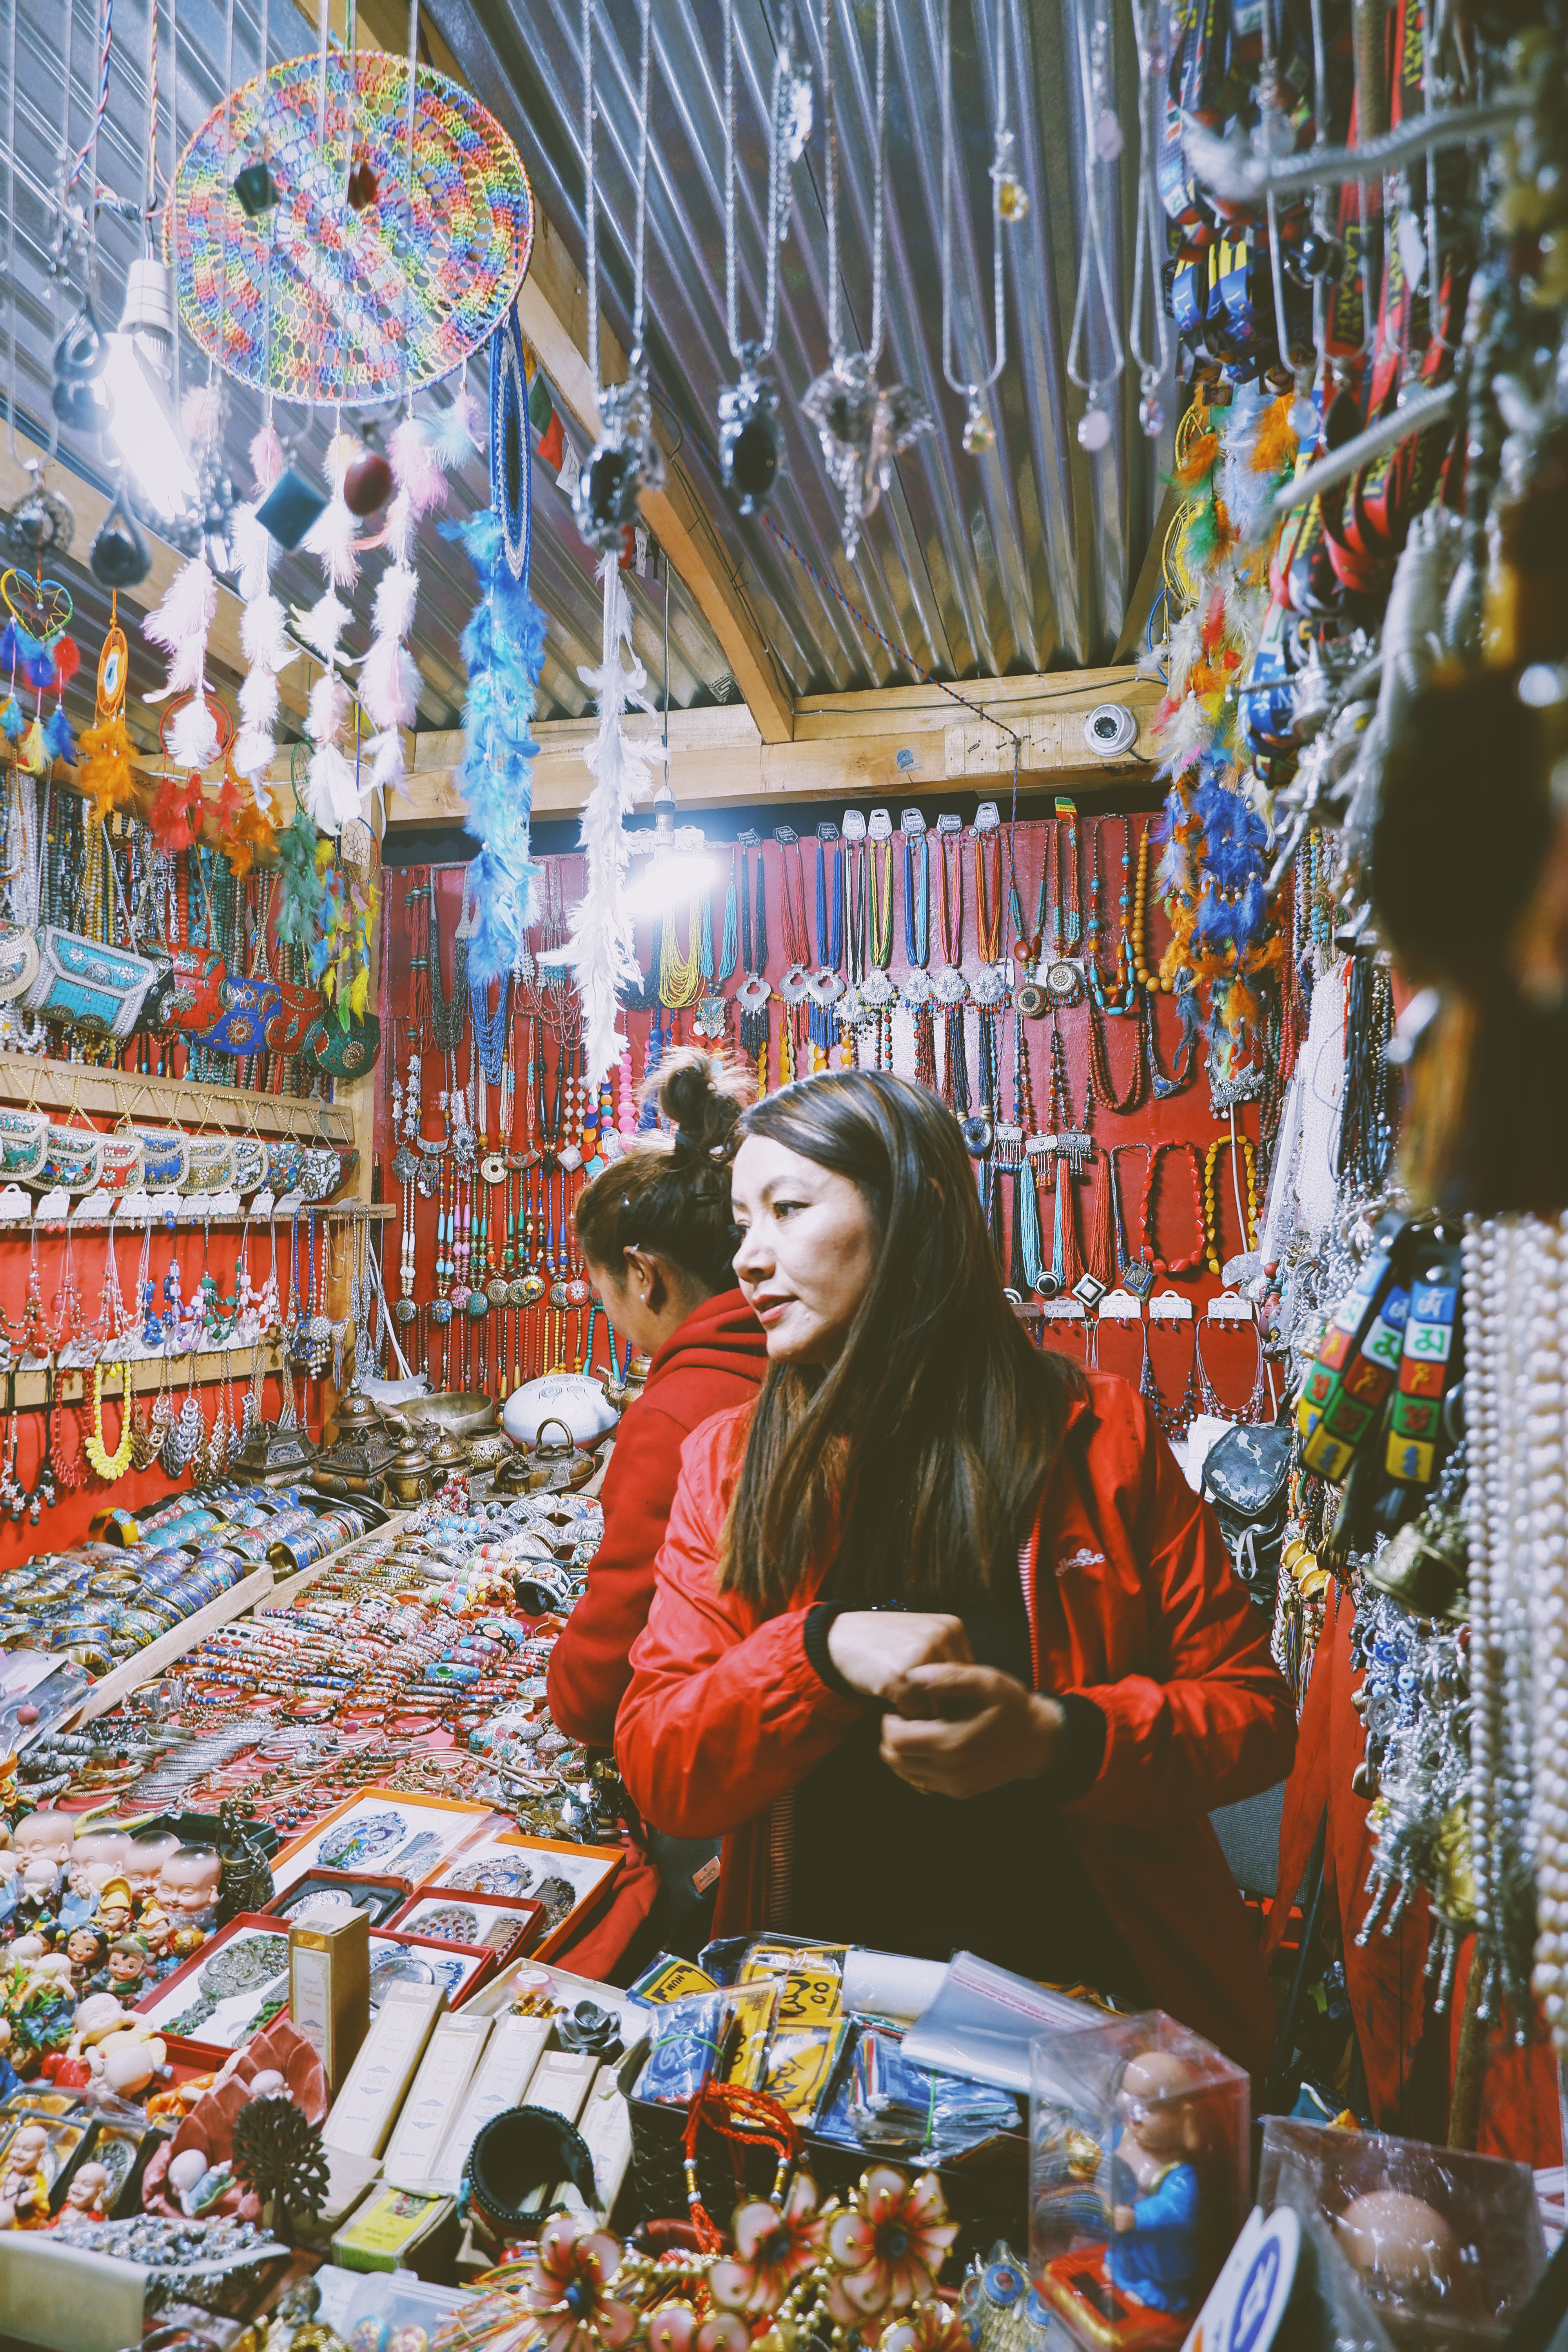 Leh market bày bán chủ yếu là các mặt hàng tơ lụa và may mặc cũng như đồ lưu niệm mang nét văn hoá Phật giáo Tây Tạng